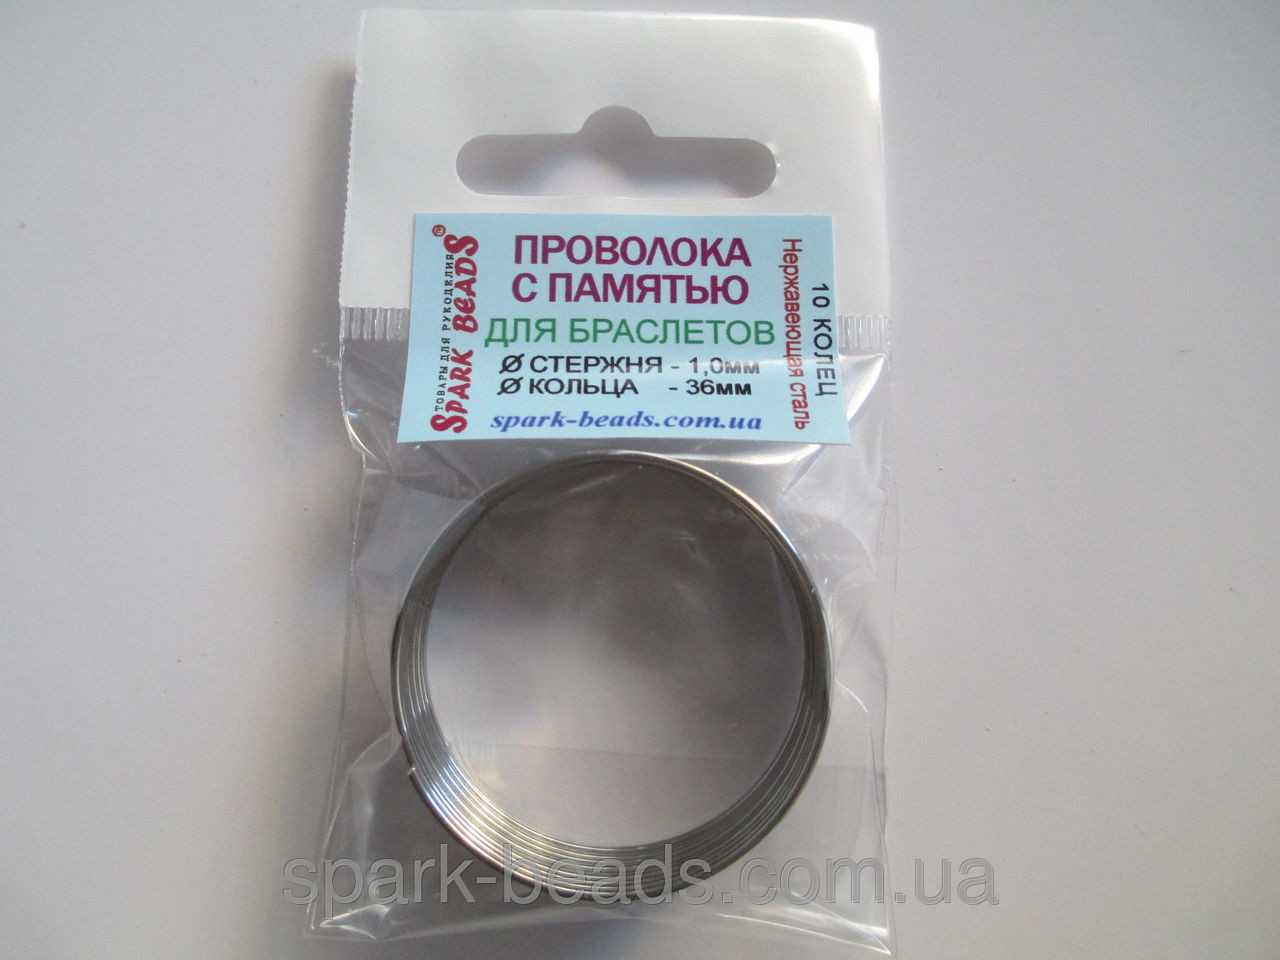 Проволока с памятью цвет серебро, диаметр кольца 36 мм, диаметр стержня проволоки 1 мм